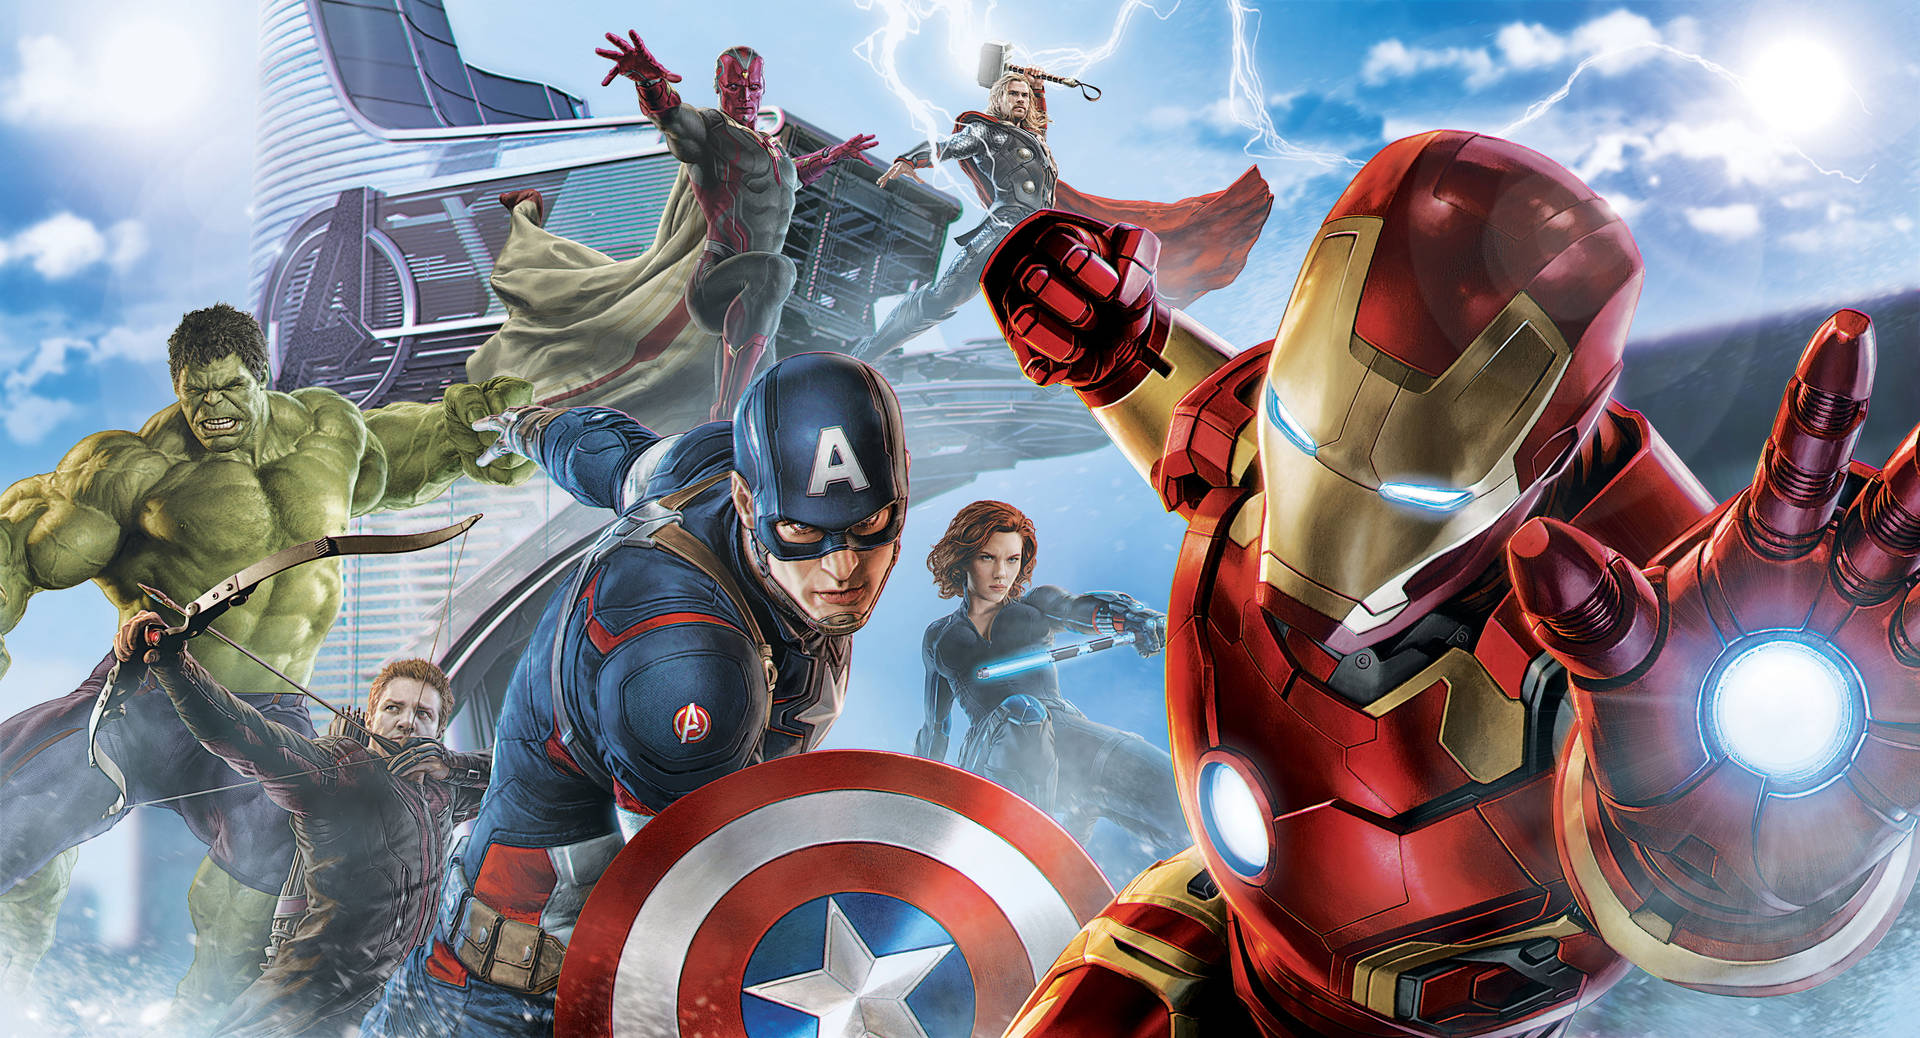 Avenger, hình nền 3D: Choáng ngợp trước vẻ đẹp của các siêu anh hùng trong bộ sưu tập hình nền 3D về Avengers. Những hình ảnh đầy màu sắc, tinh tế và sống động sẽ khiến bạn cảm thấy như đang sống trong vũ trụ Marvel.